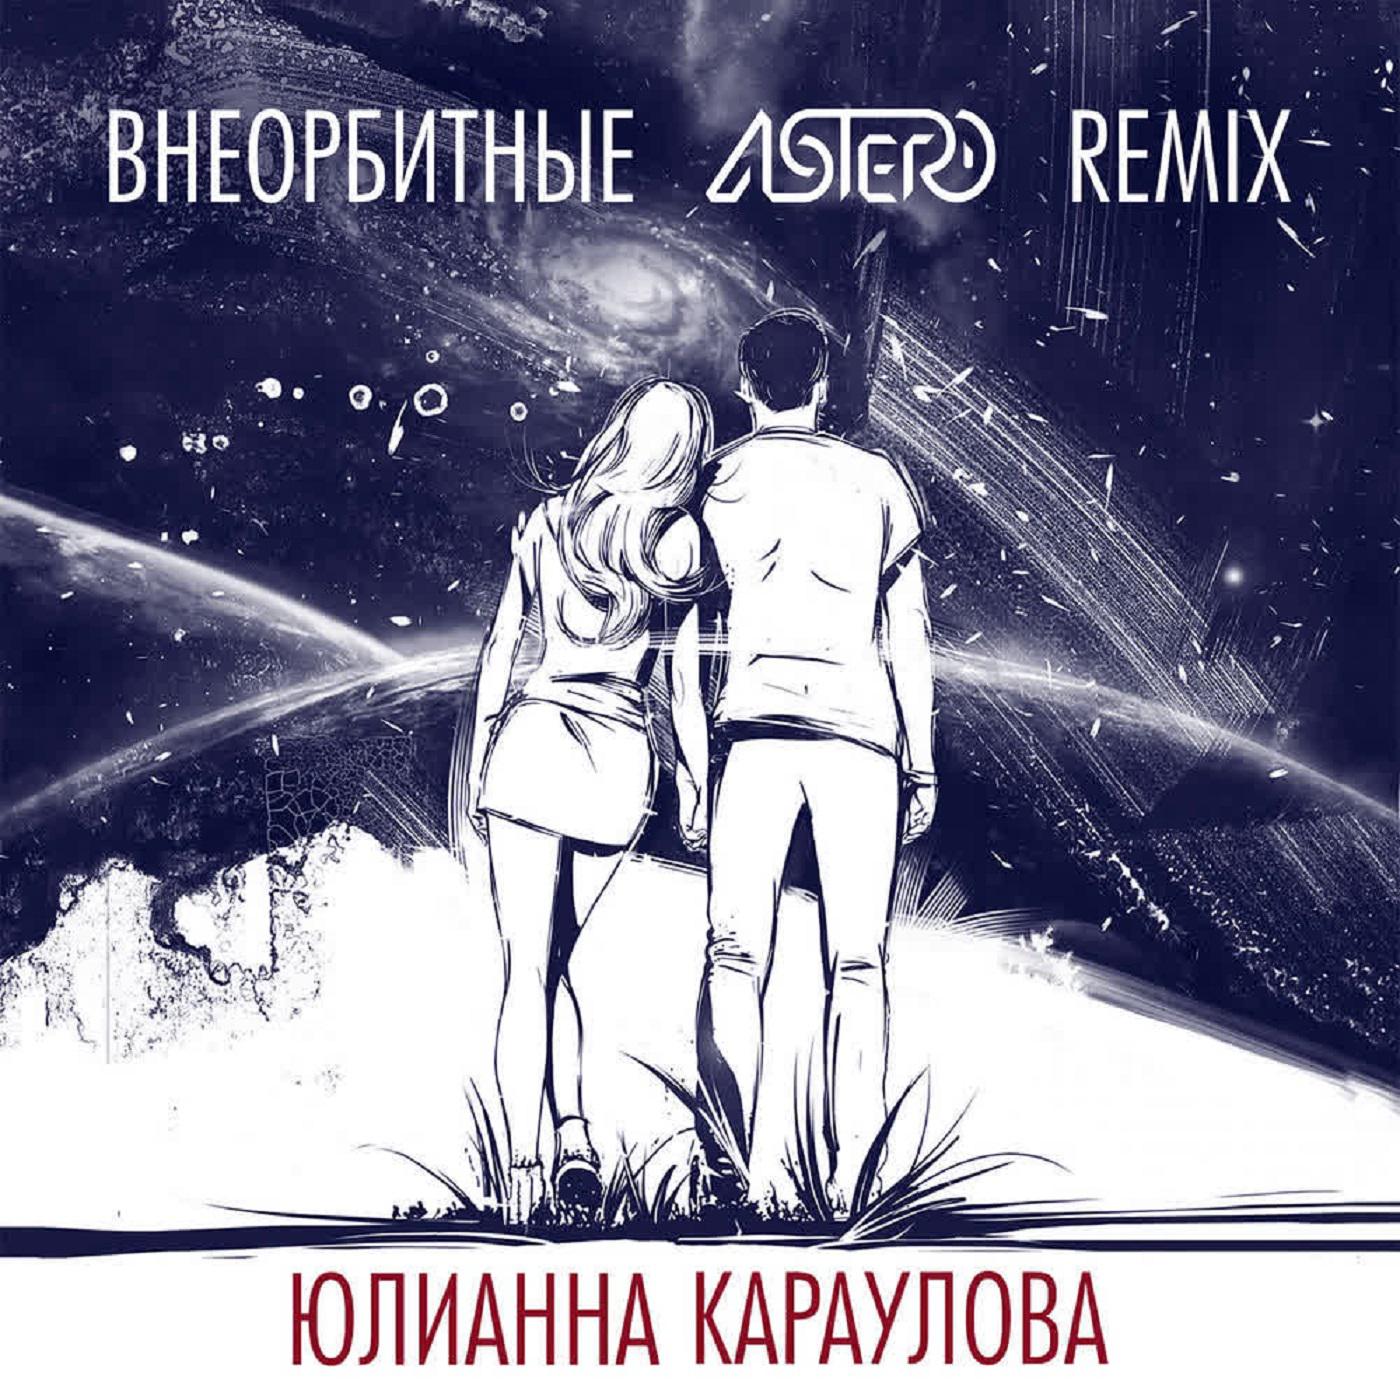 Юлианна Караулова - Внеорбитные (Astero Club Remix)